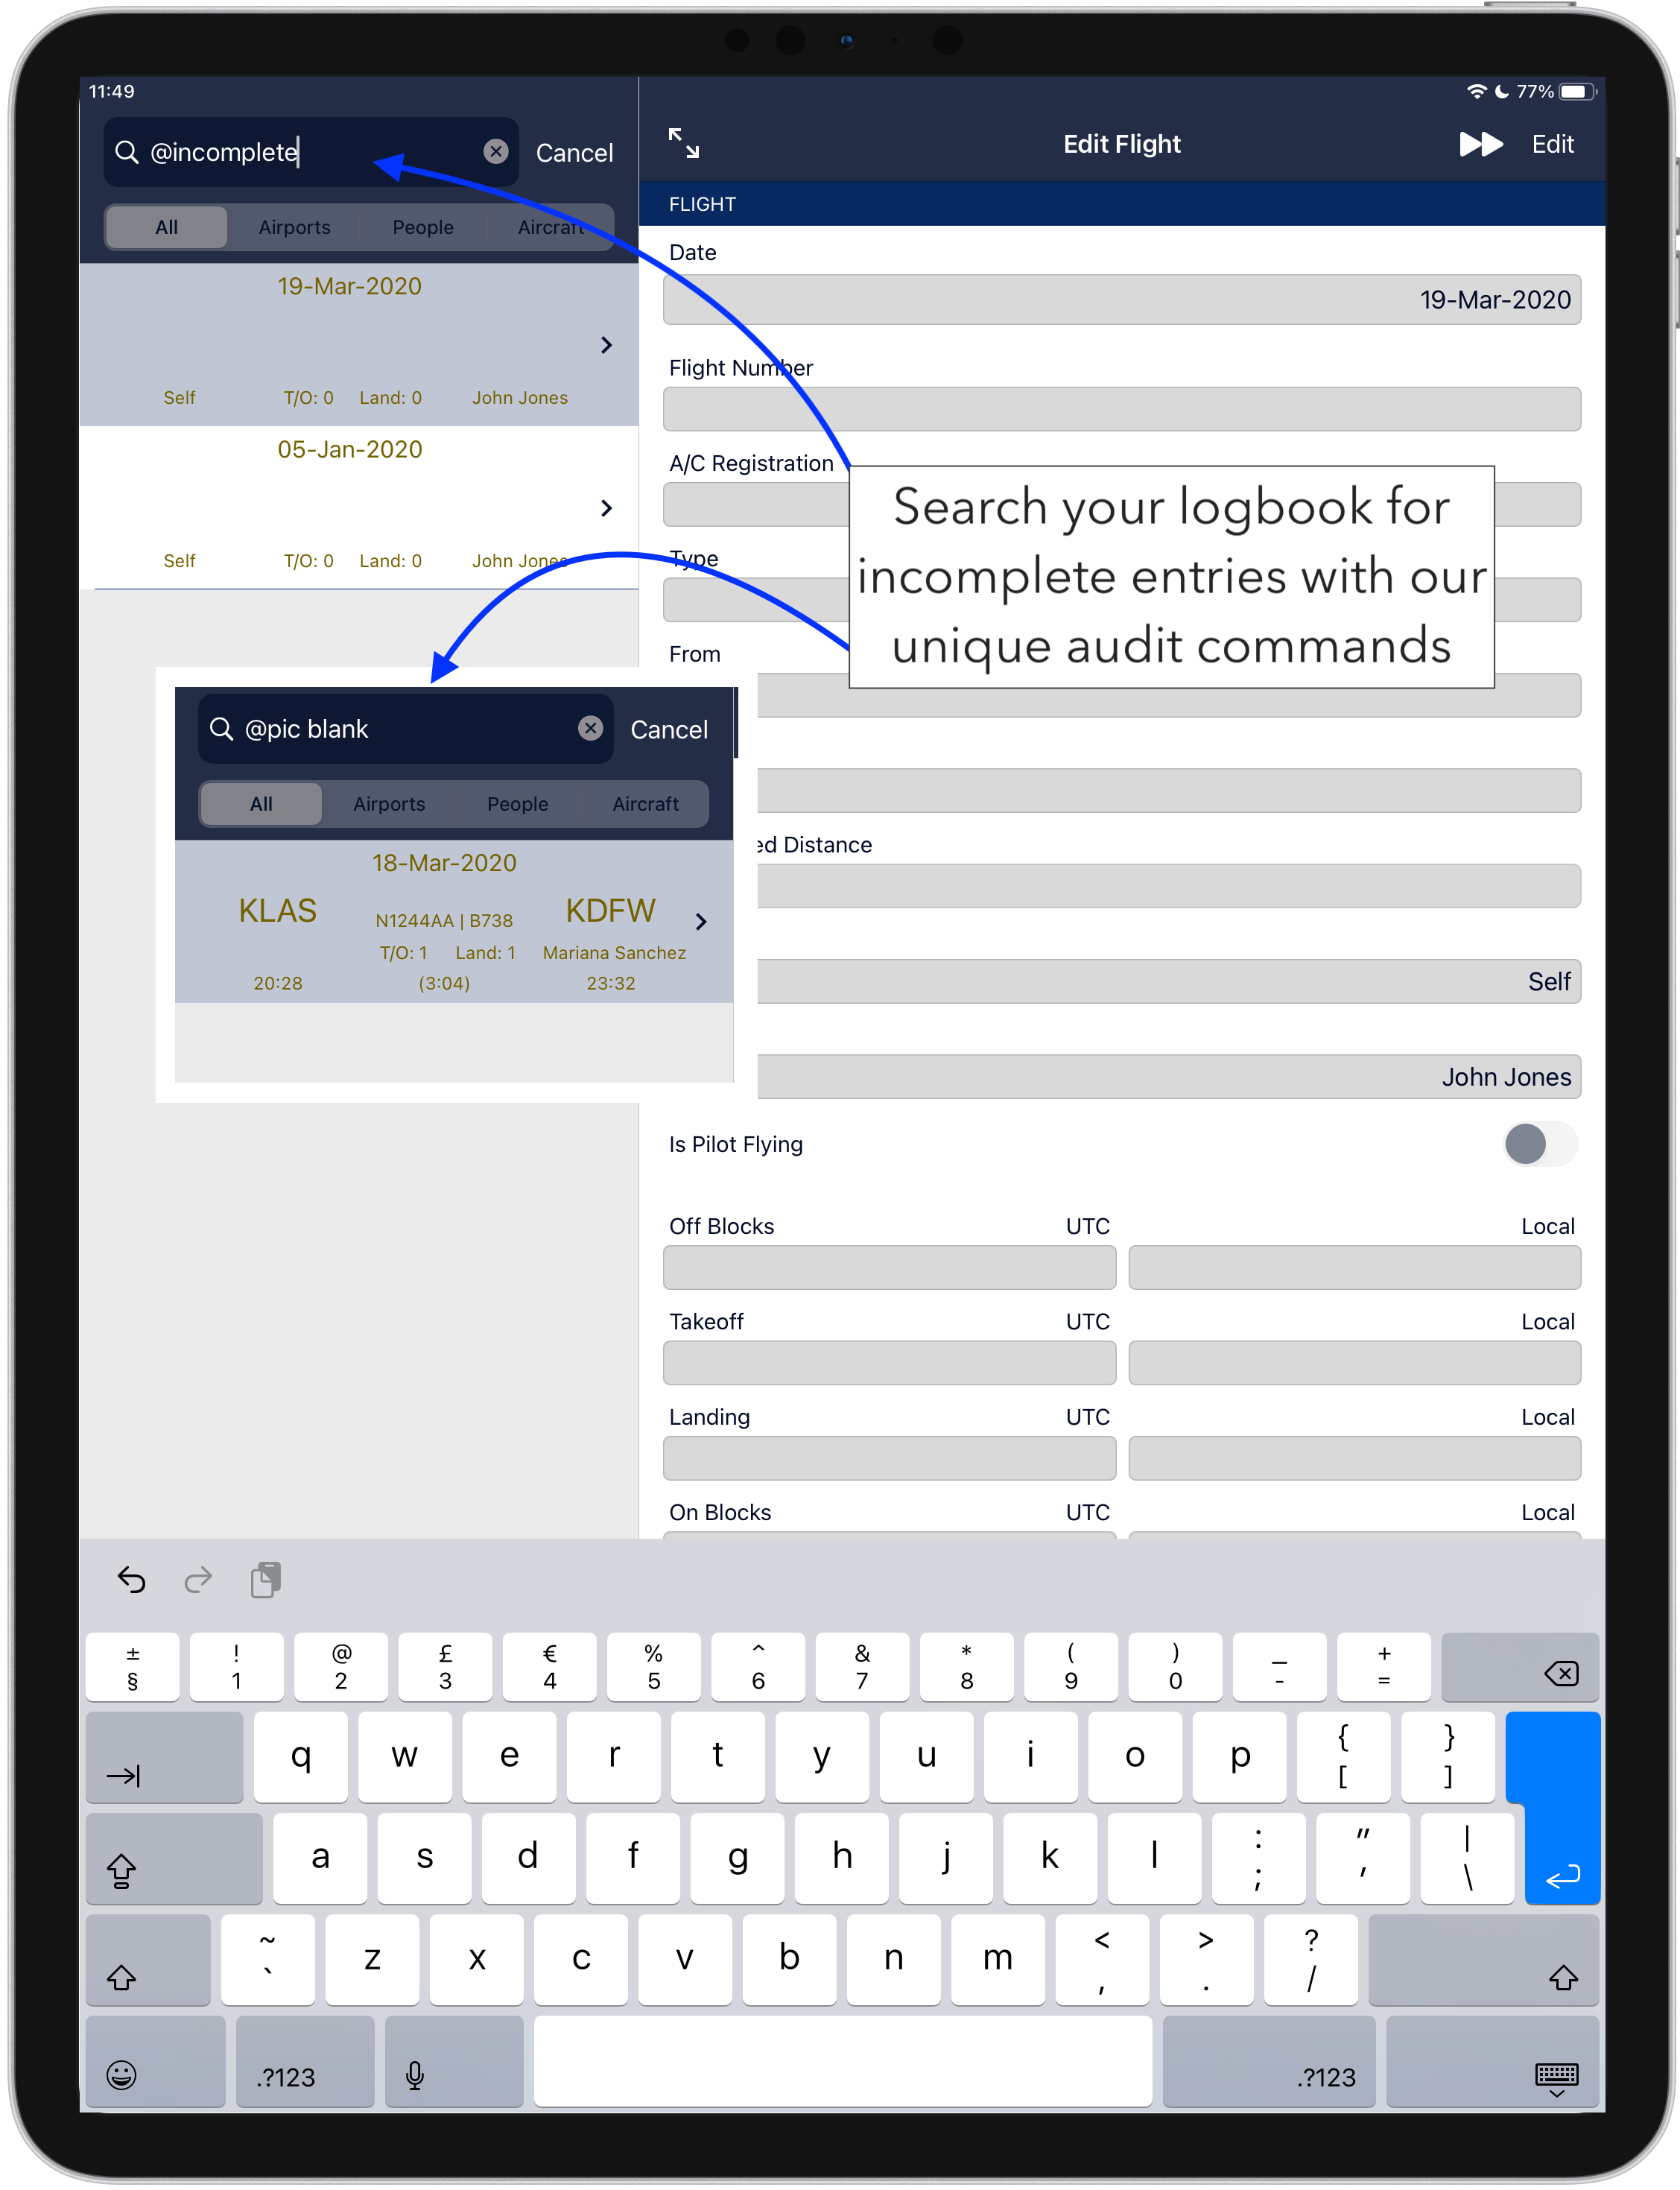 AvionLog Pilot Logbook App Audit Tools